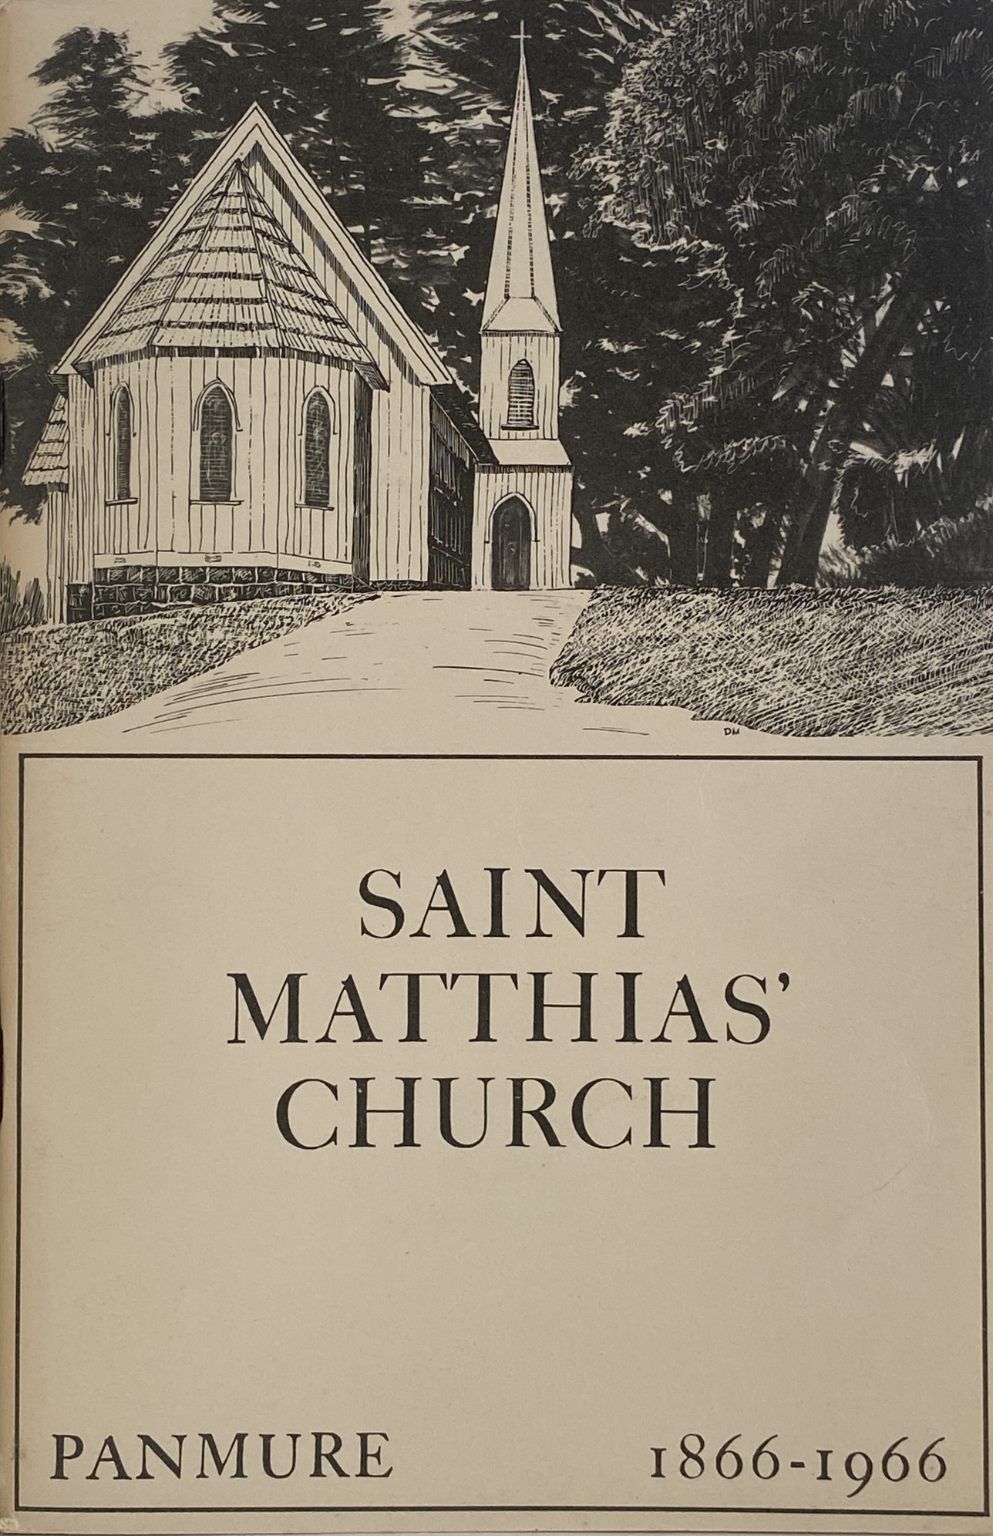 SAINT MATTHIAS CHURCH PANMURE 1866-1966